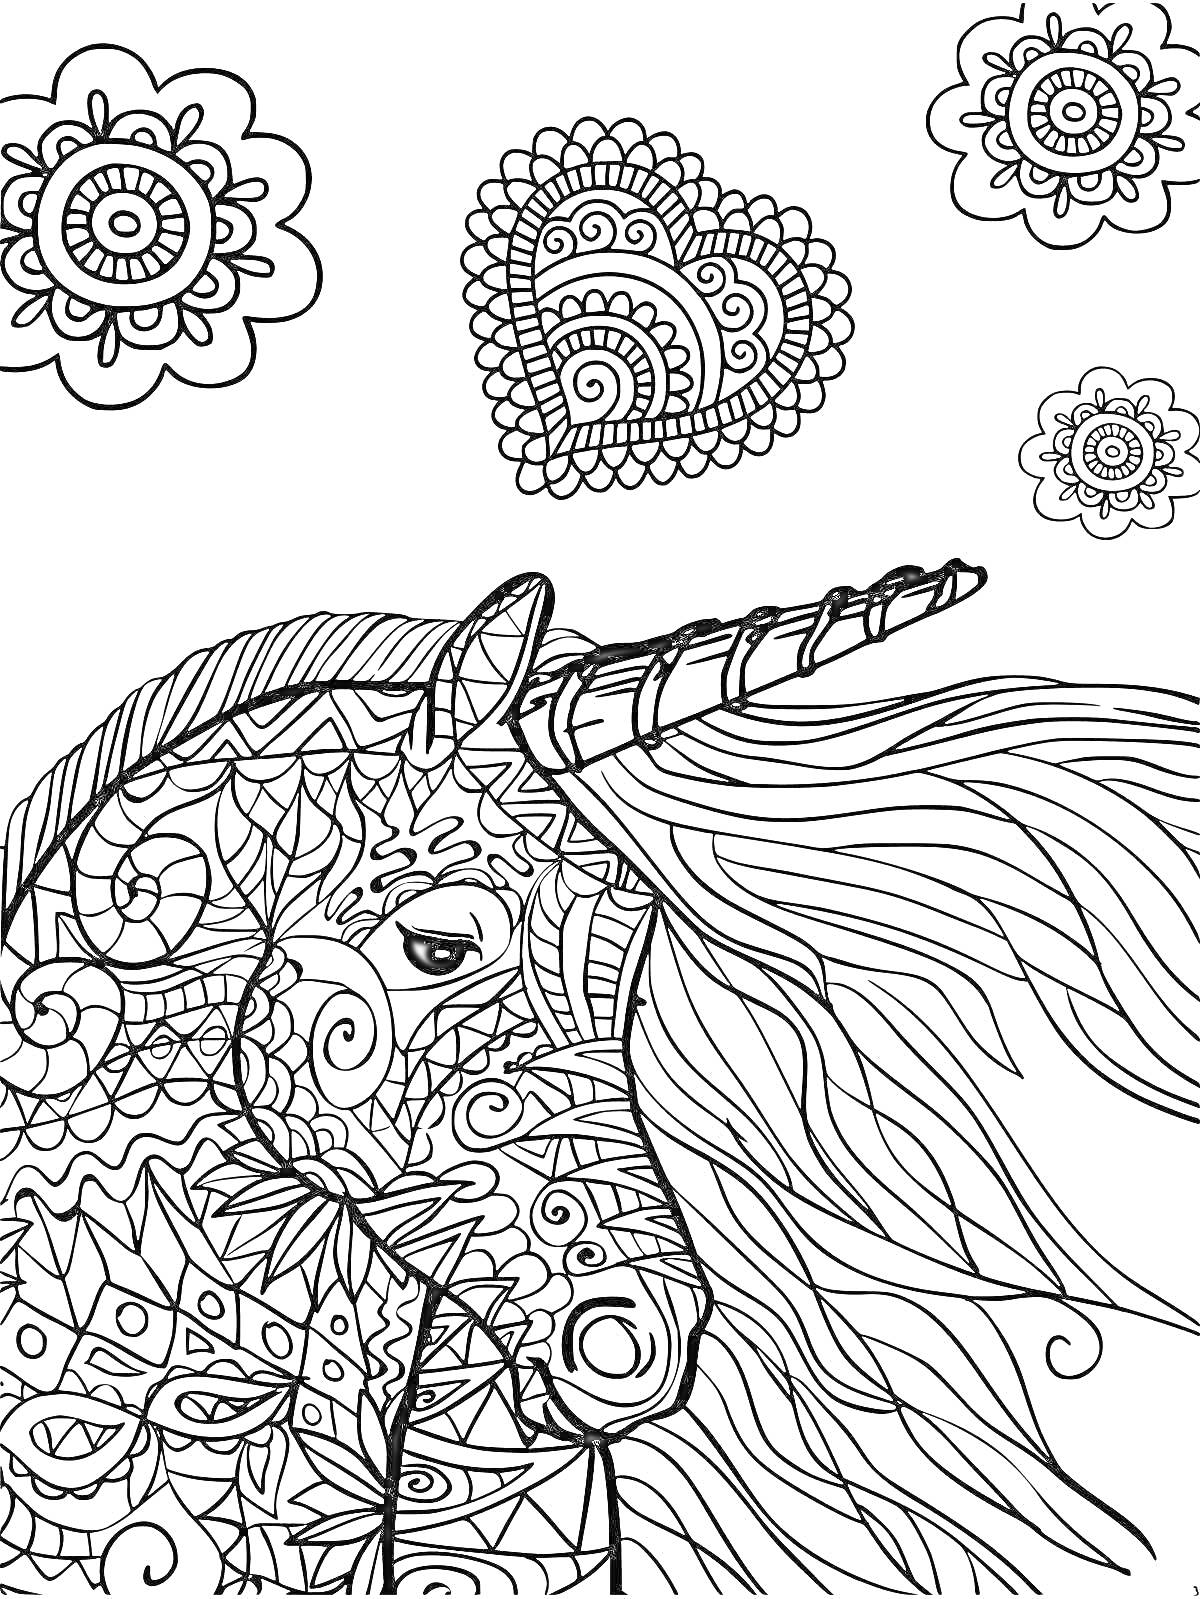 Раскраска Единорог с цветами, сердцем и абстрактными узорами